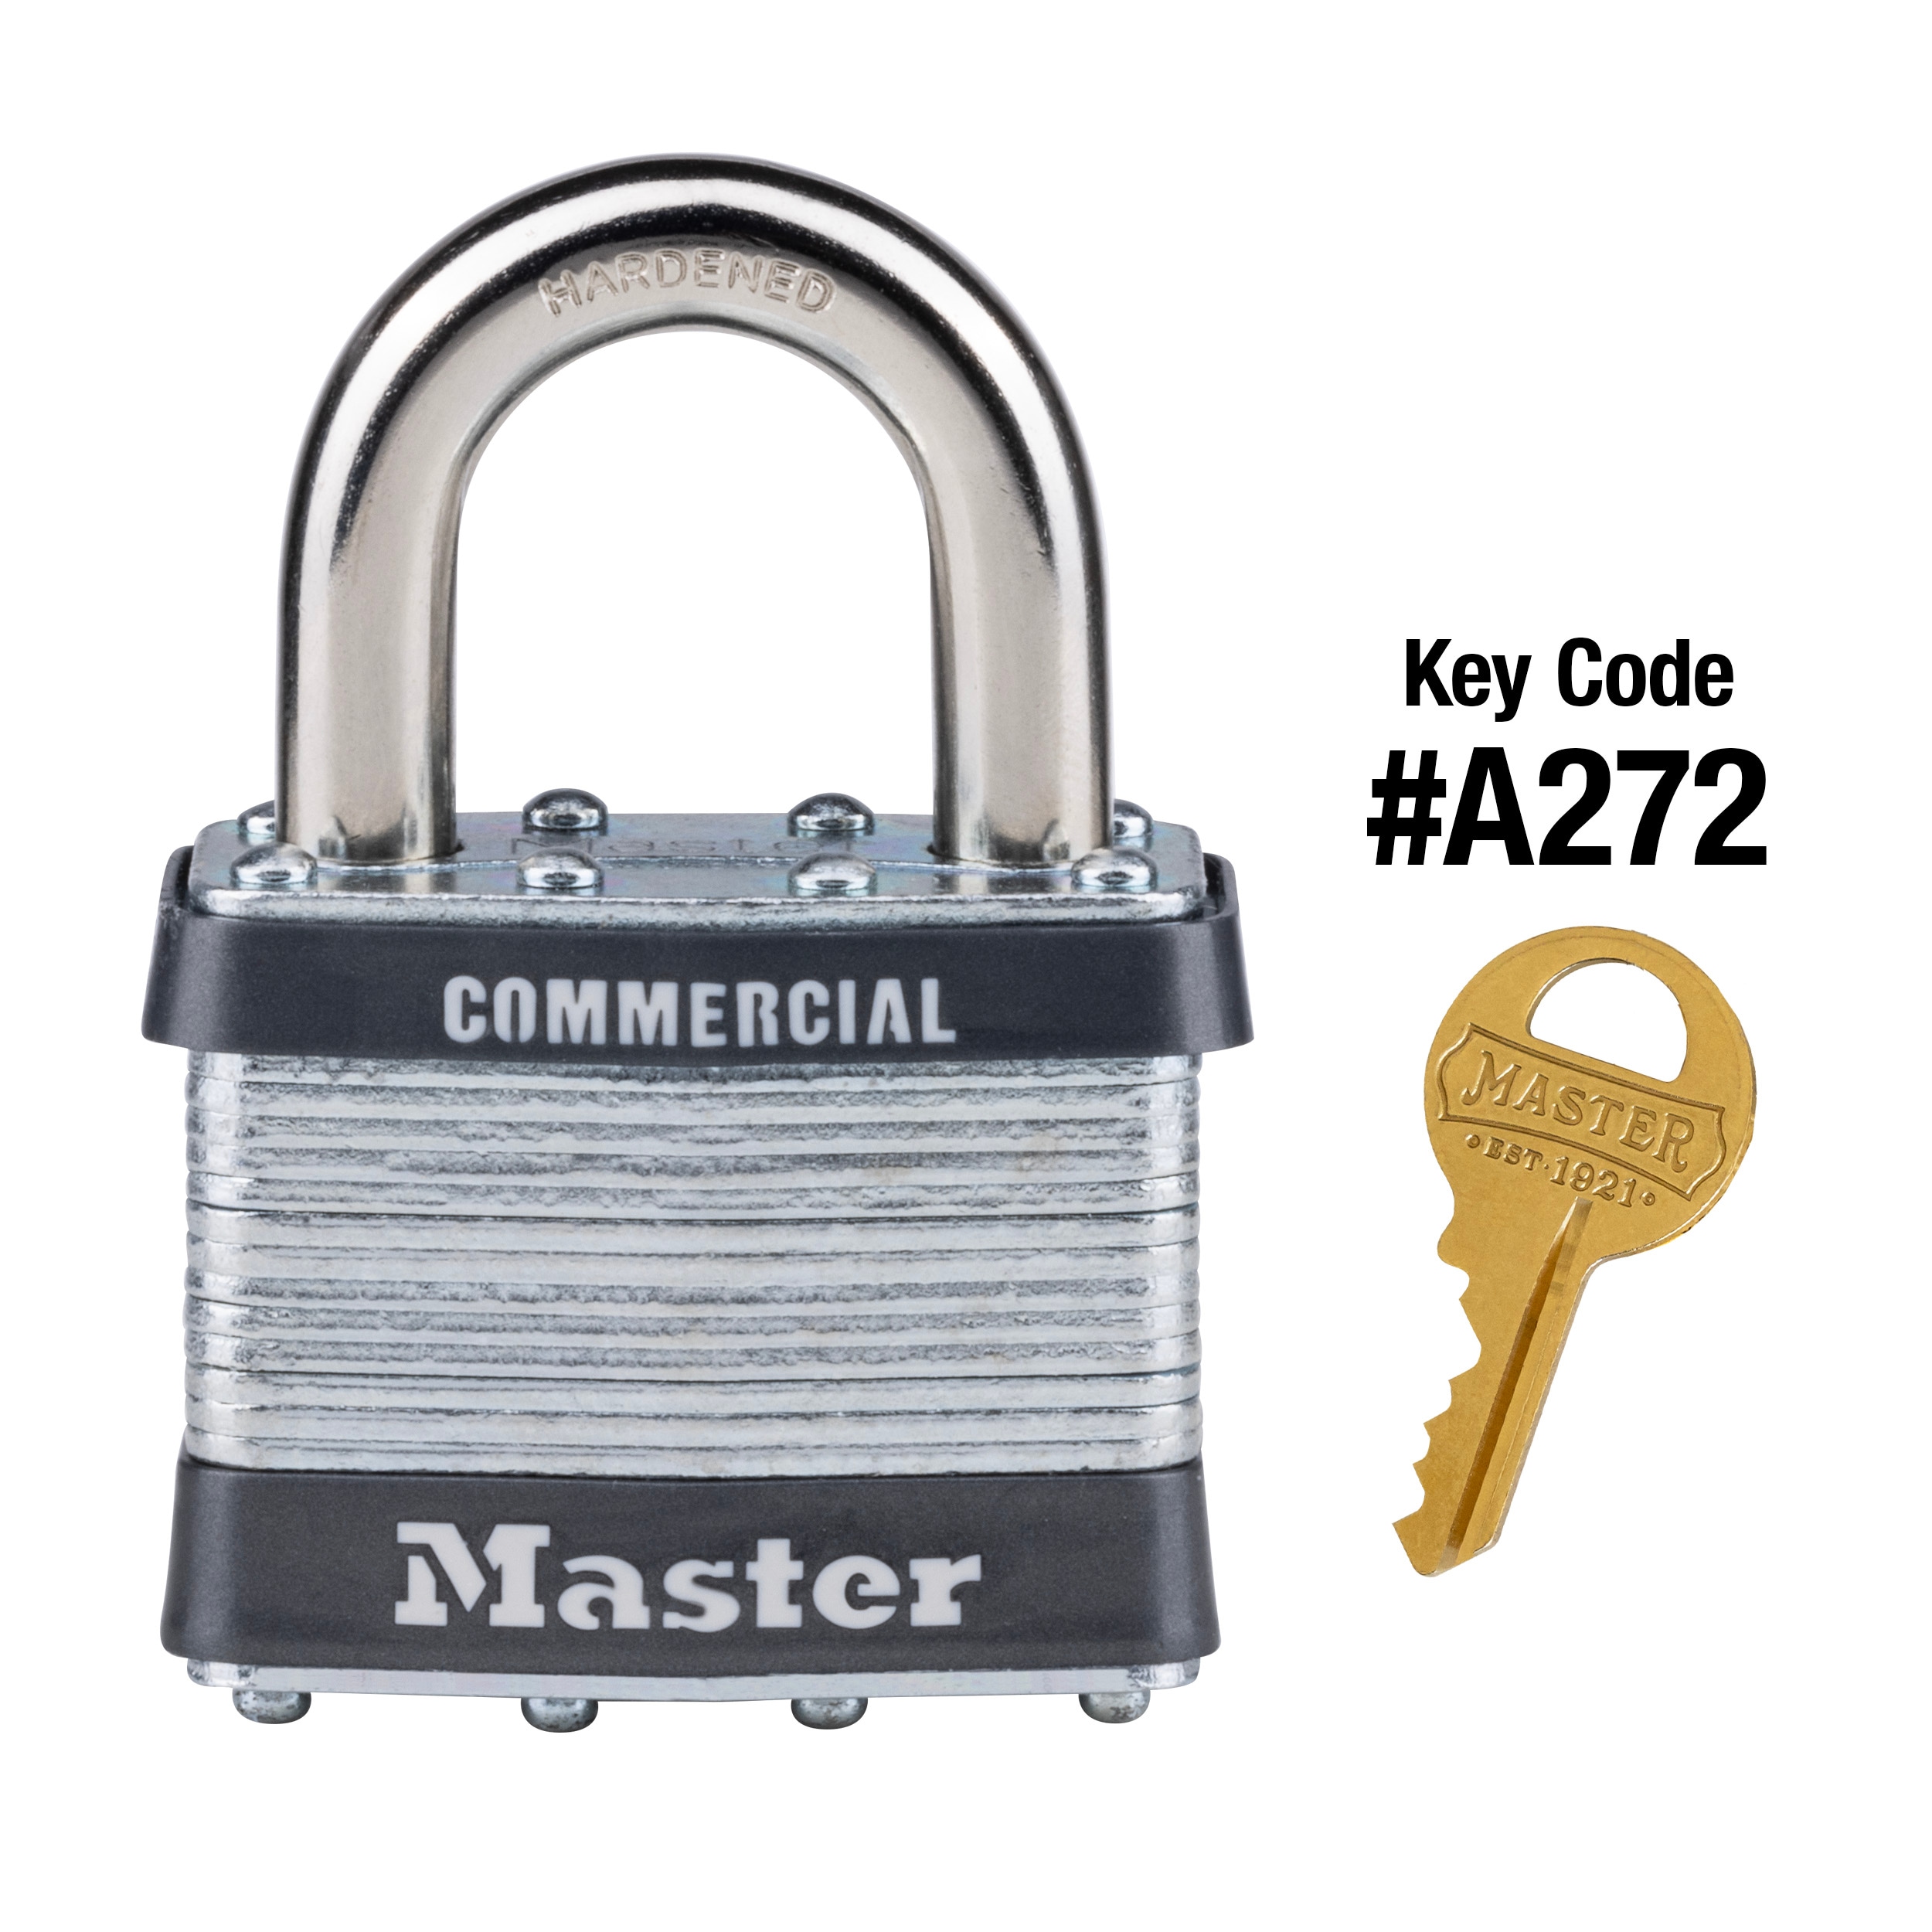 Master Lock® Keyed Alike Padlocks